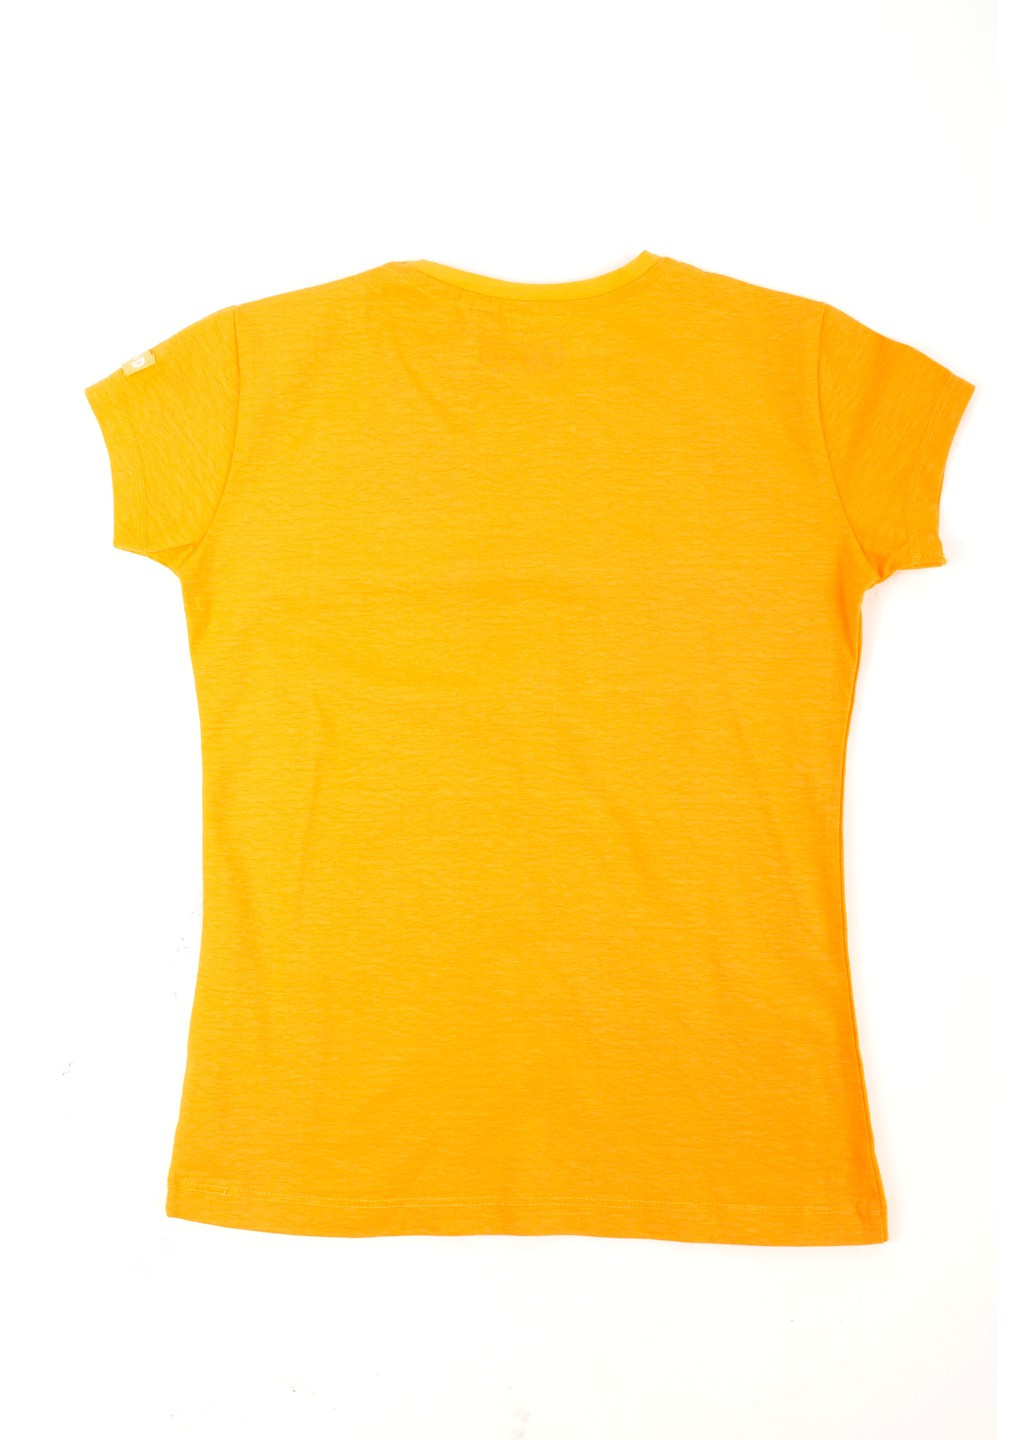 Оранжевая летняя футболка на девочку tom-du оранжевая с принтом 070821-001903 TOM DU